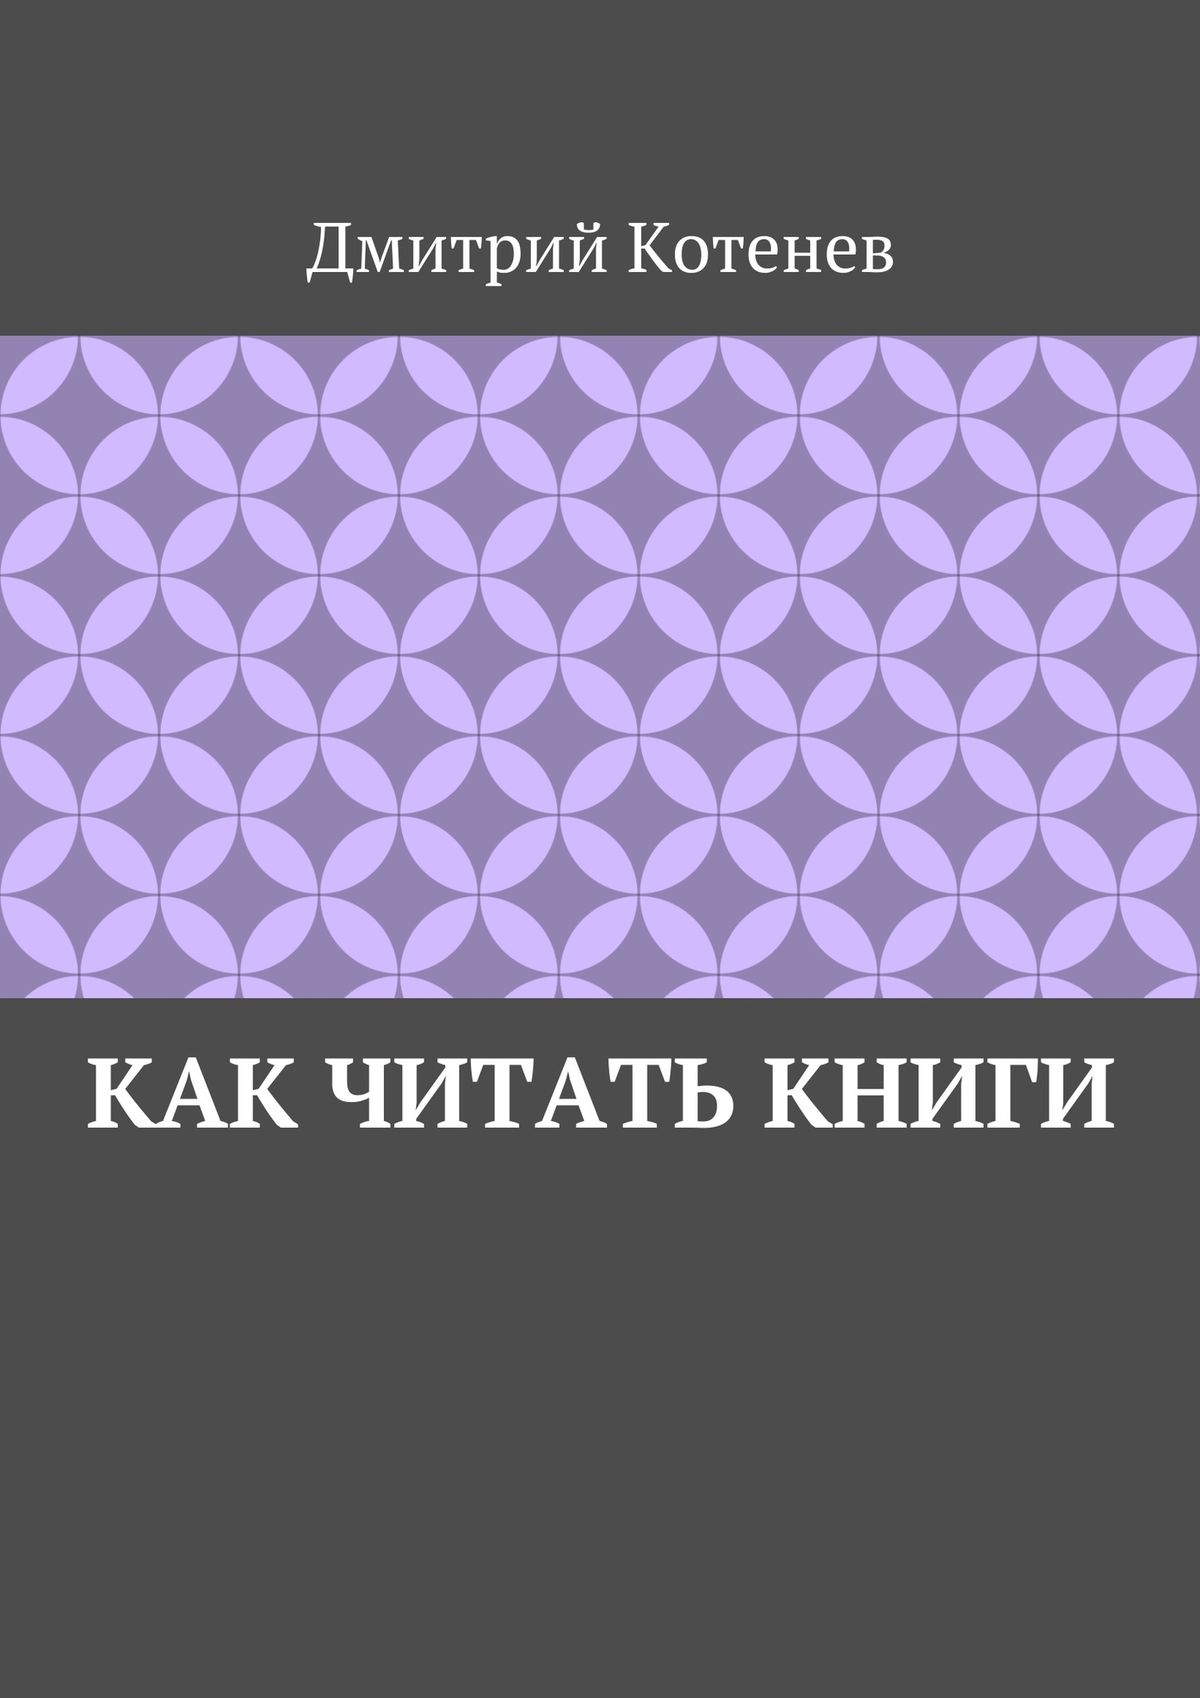 Книга Как читать книги из серии , созданная Дмитрий Котенев, может относится к жанру Языкознание. Стоимость книги Как читать книги  с идентификатором 20097998 составляет 40.00 руб.